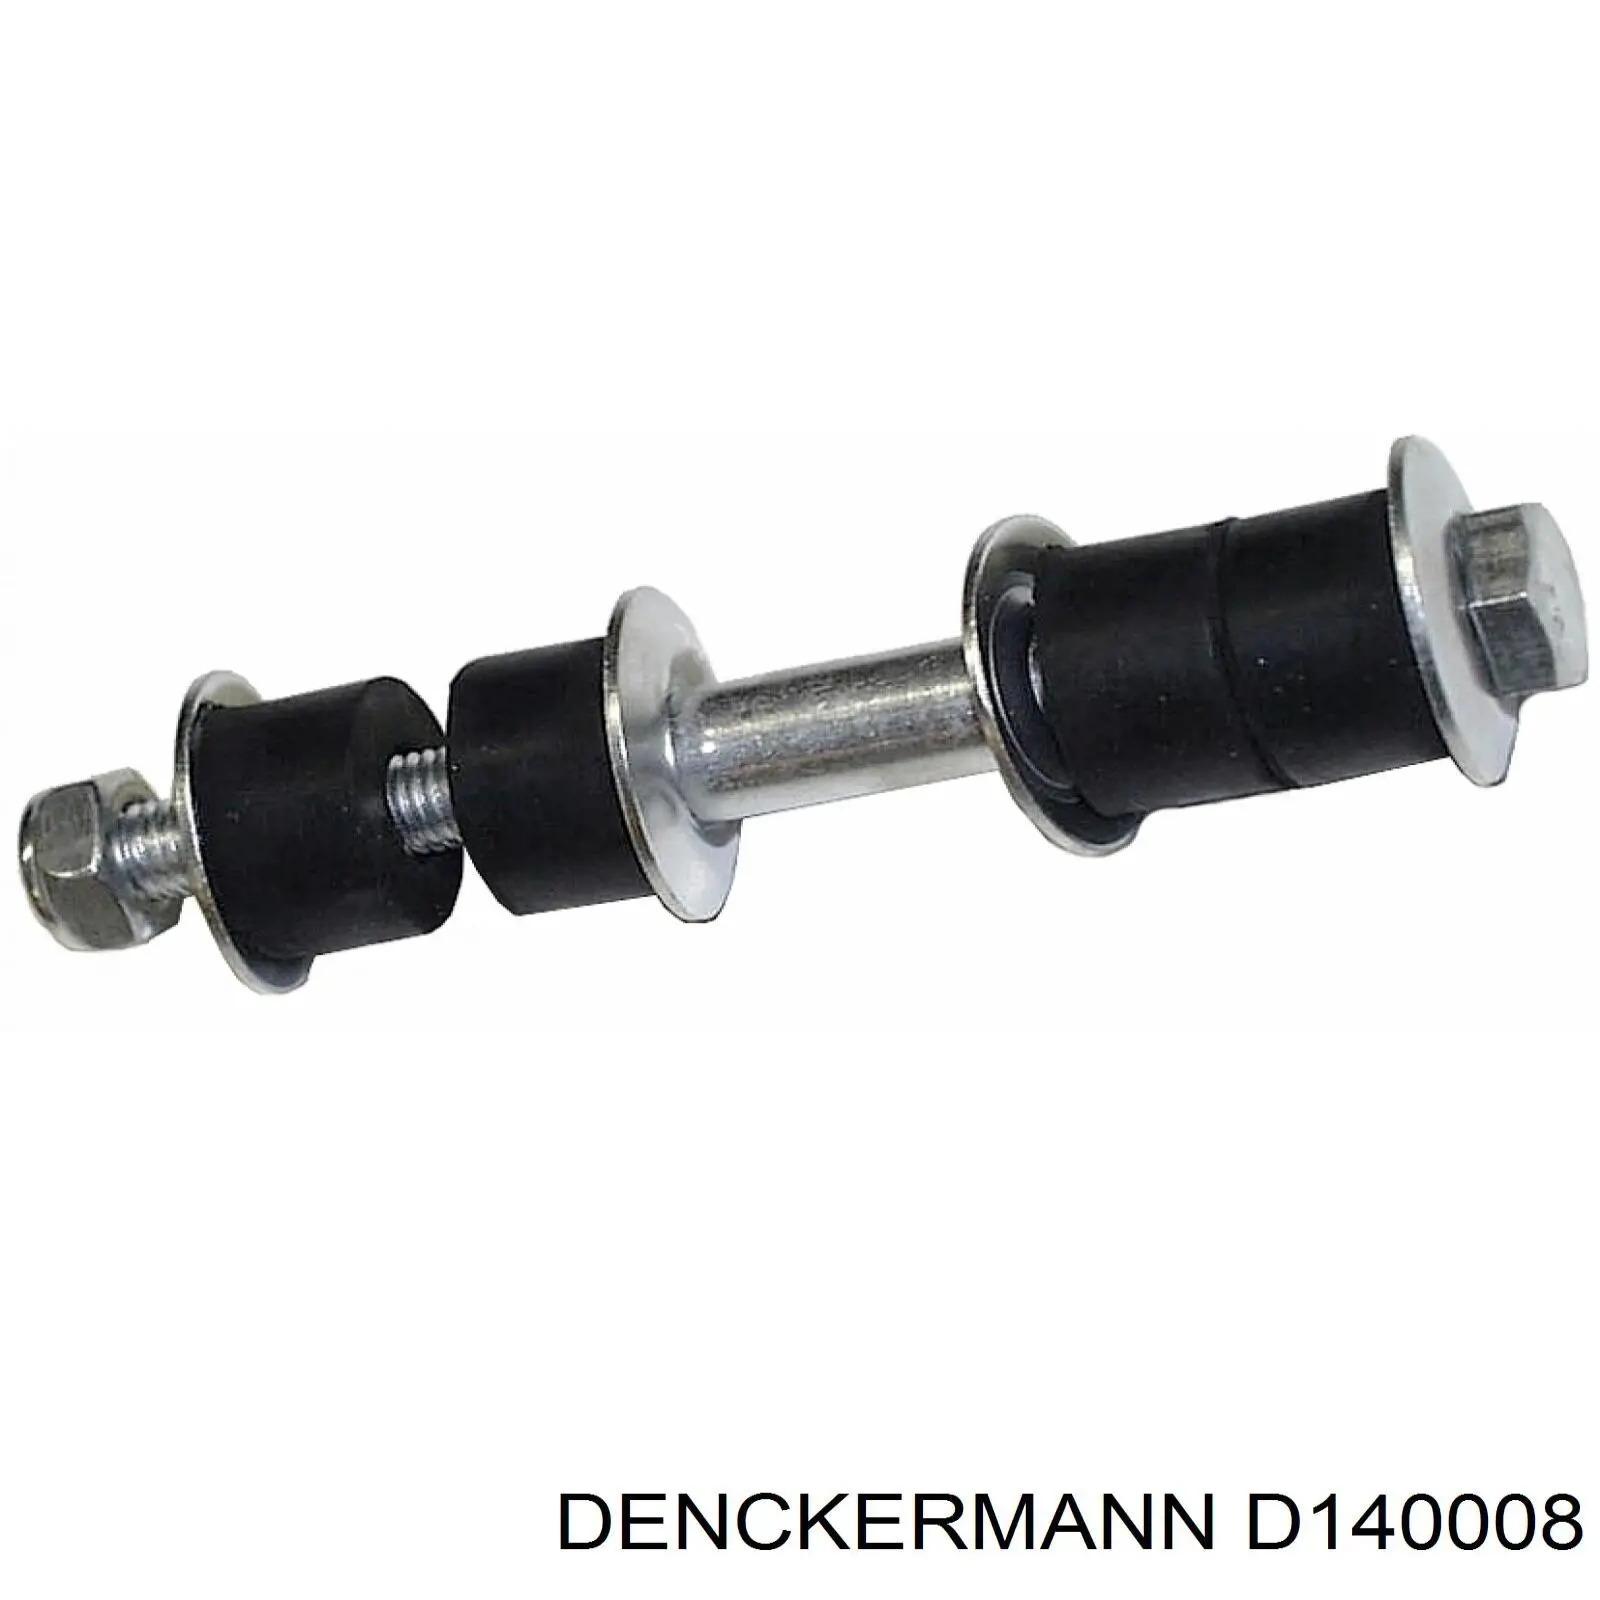 D140008 Denckermann soporte de barra estabilizadora delantera